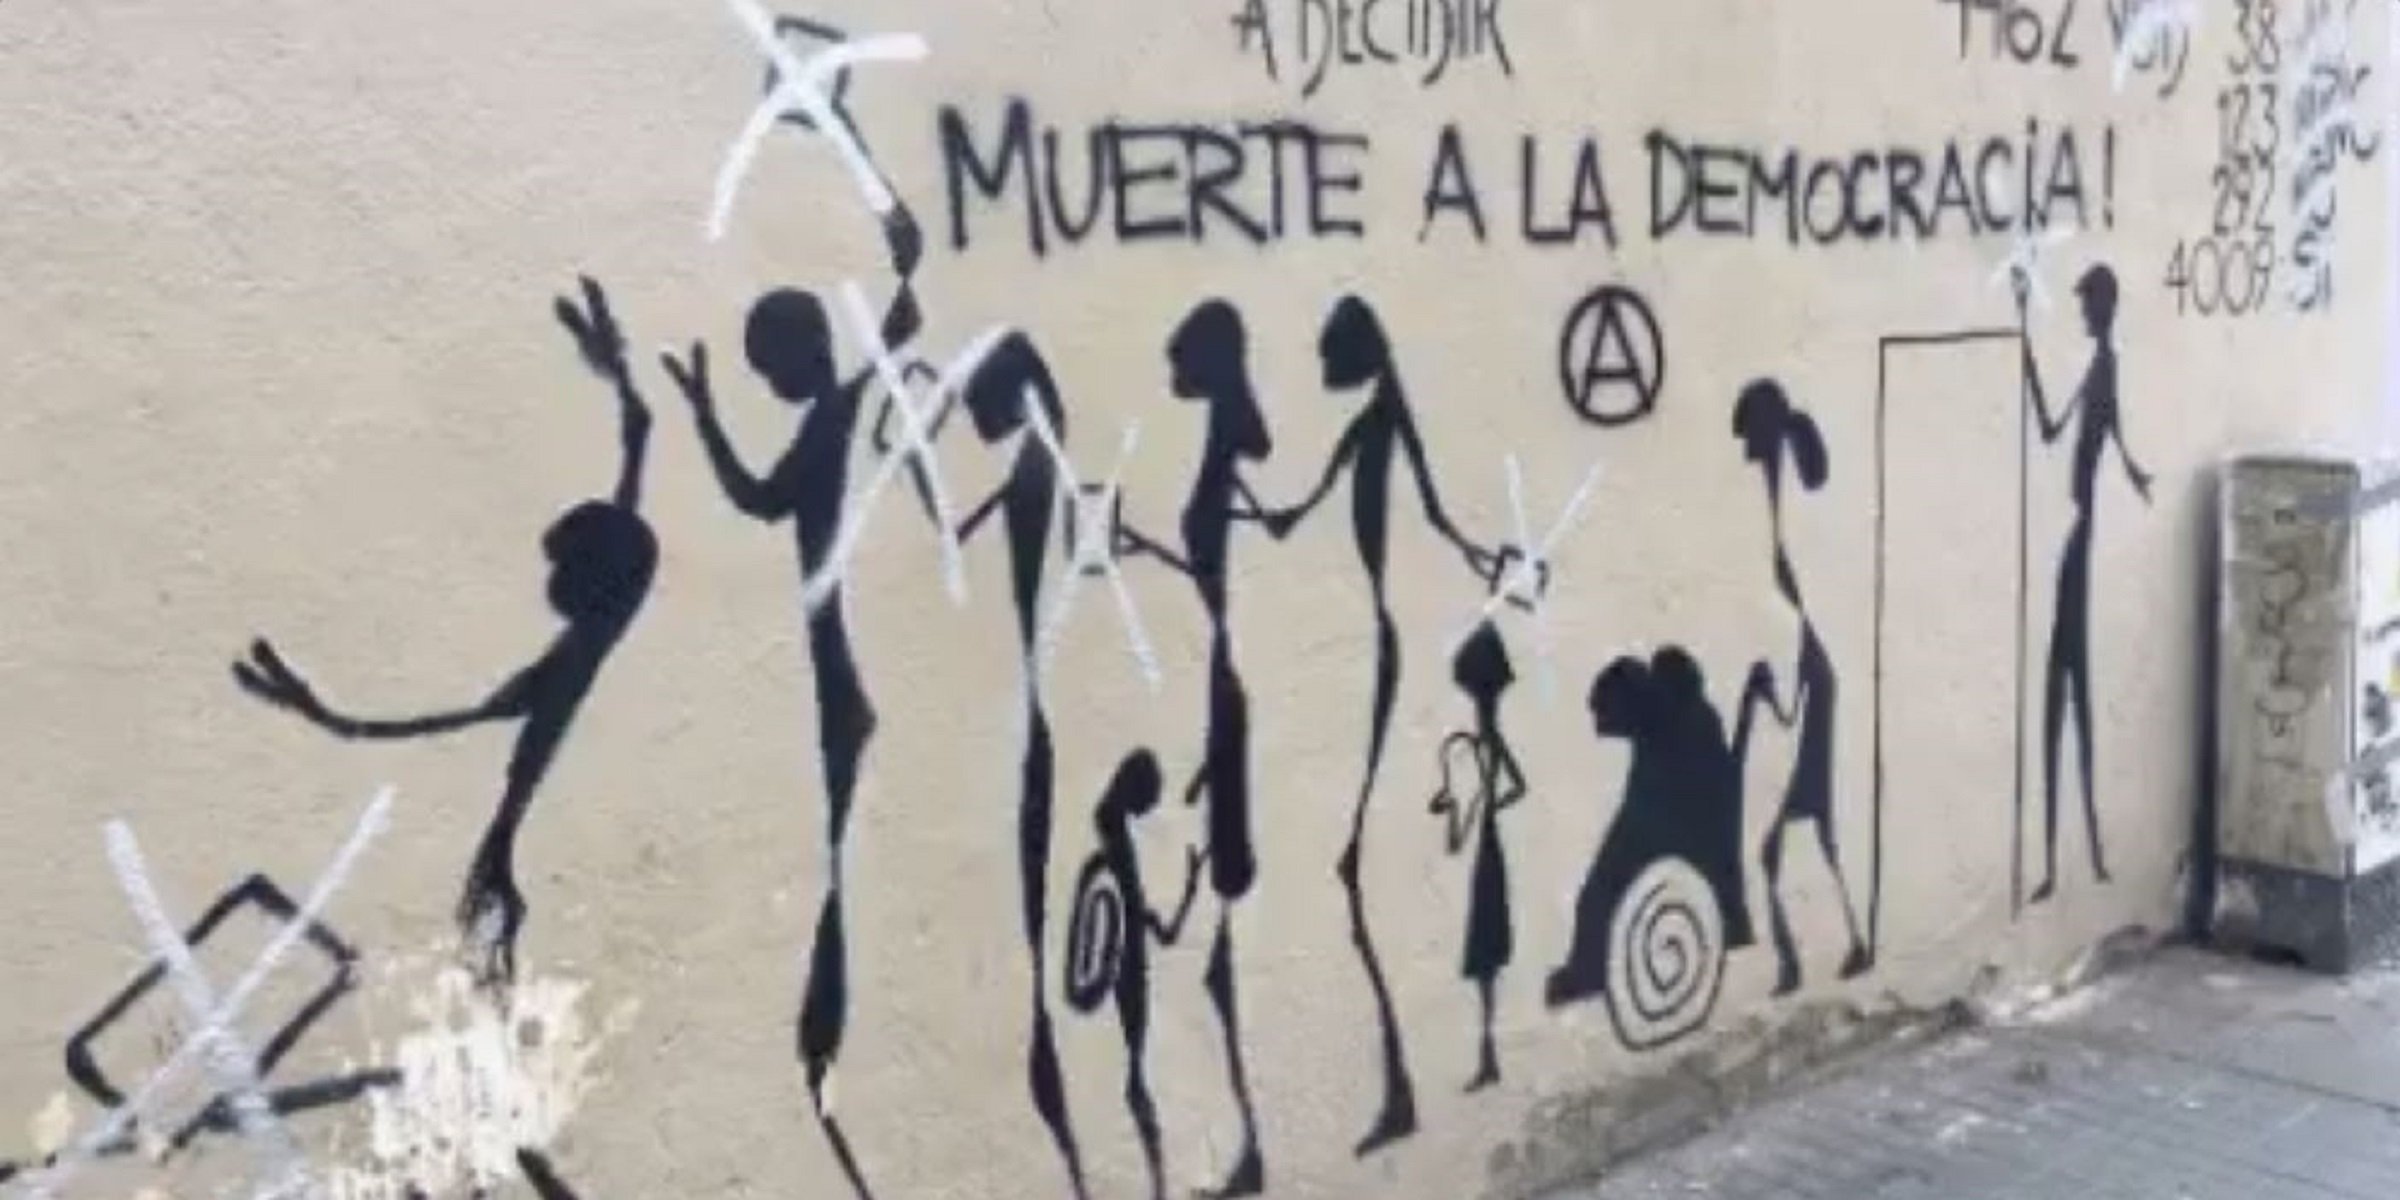 Atacan un mural del 1-O en Sant Andreu: "Muerte a la democracia"